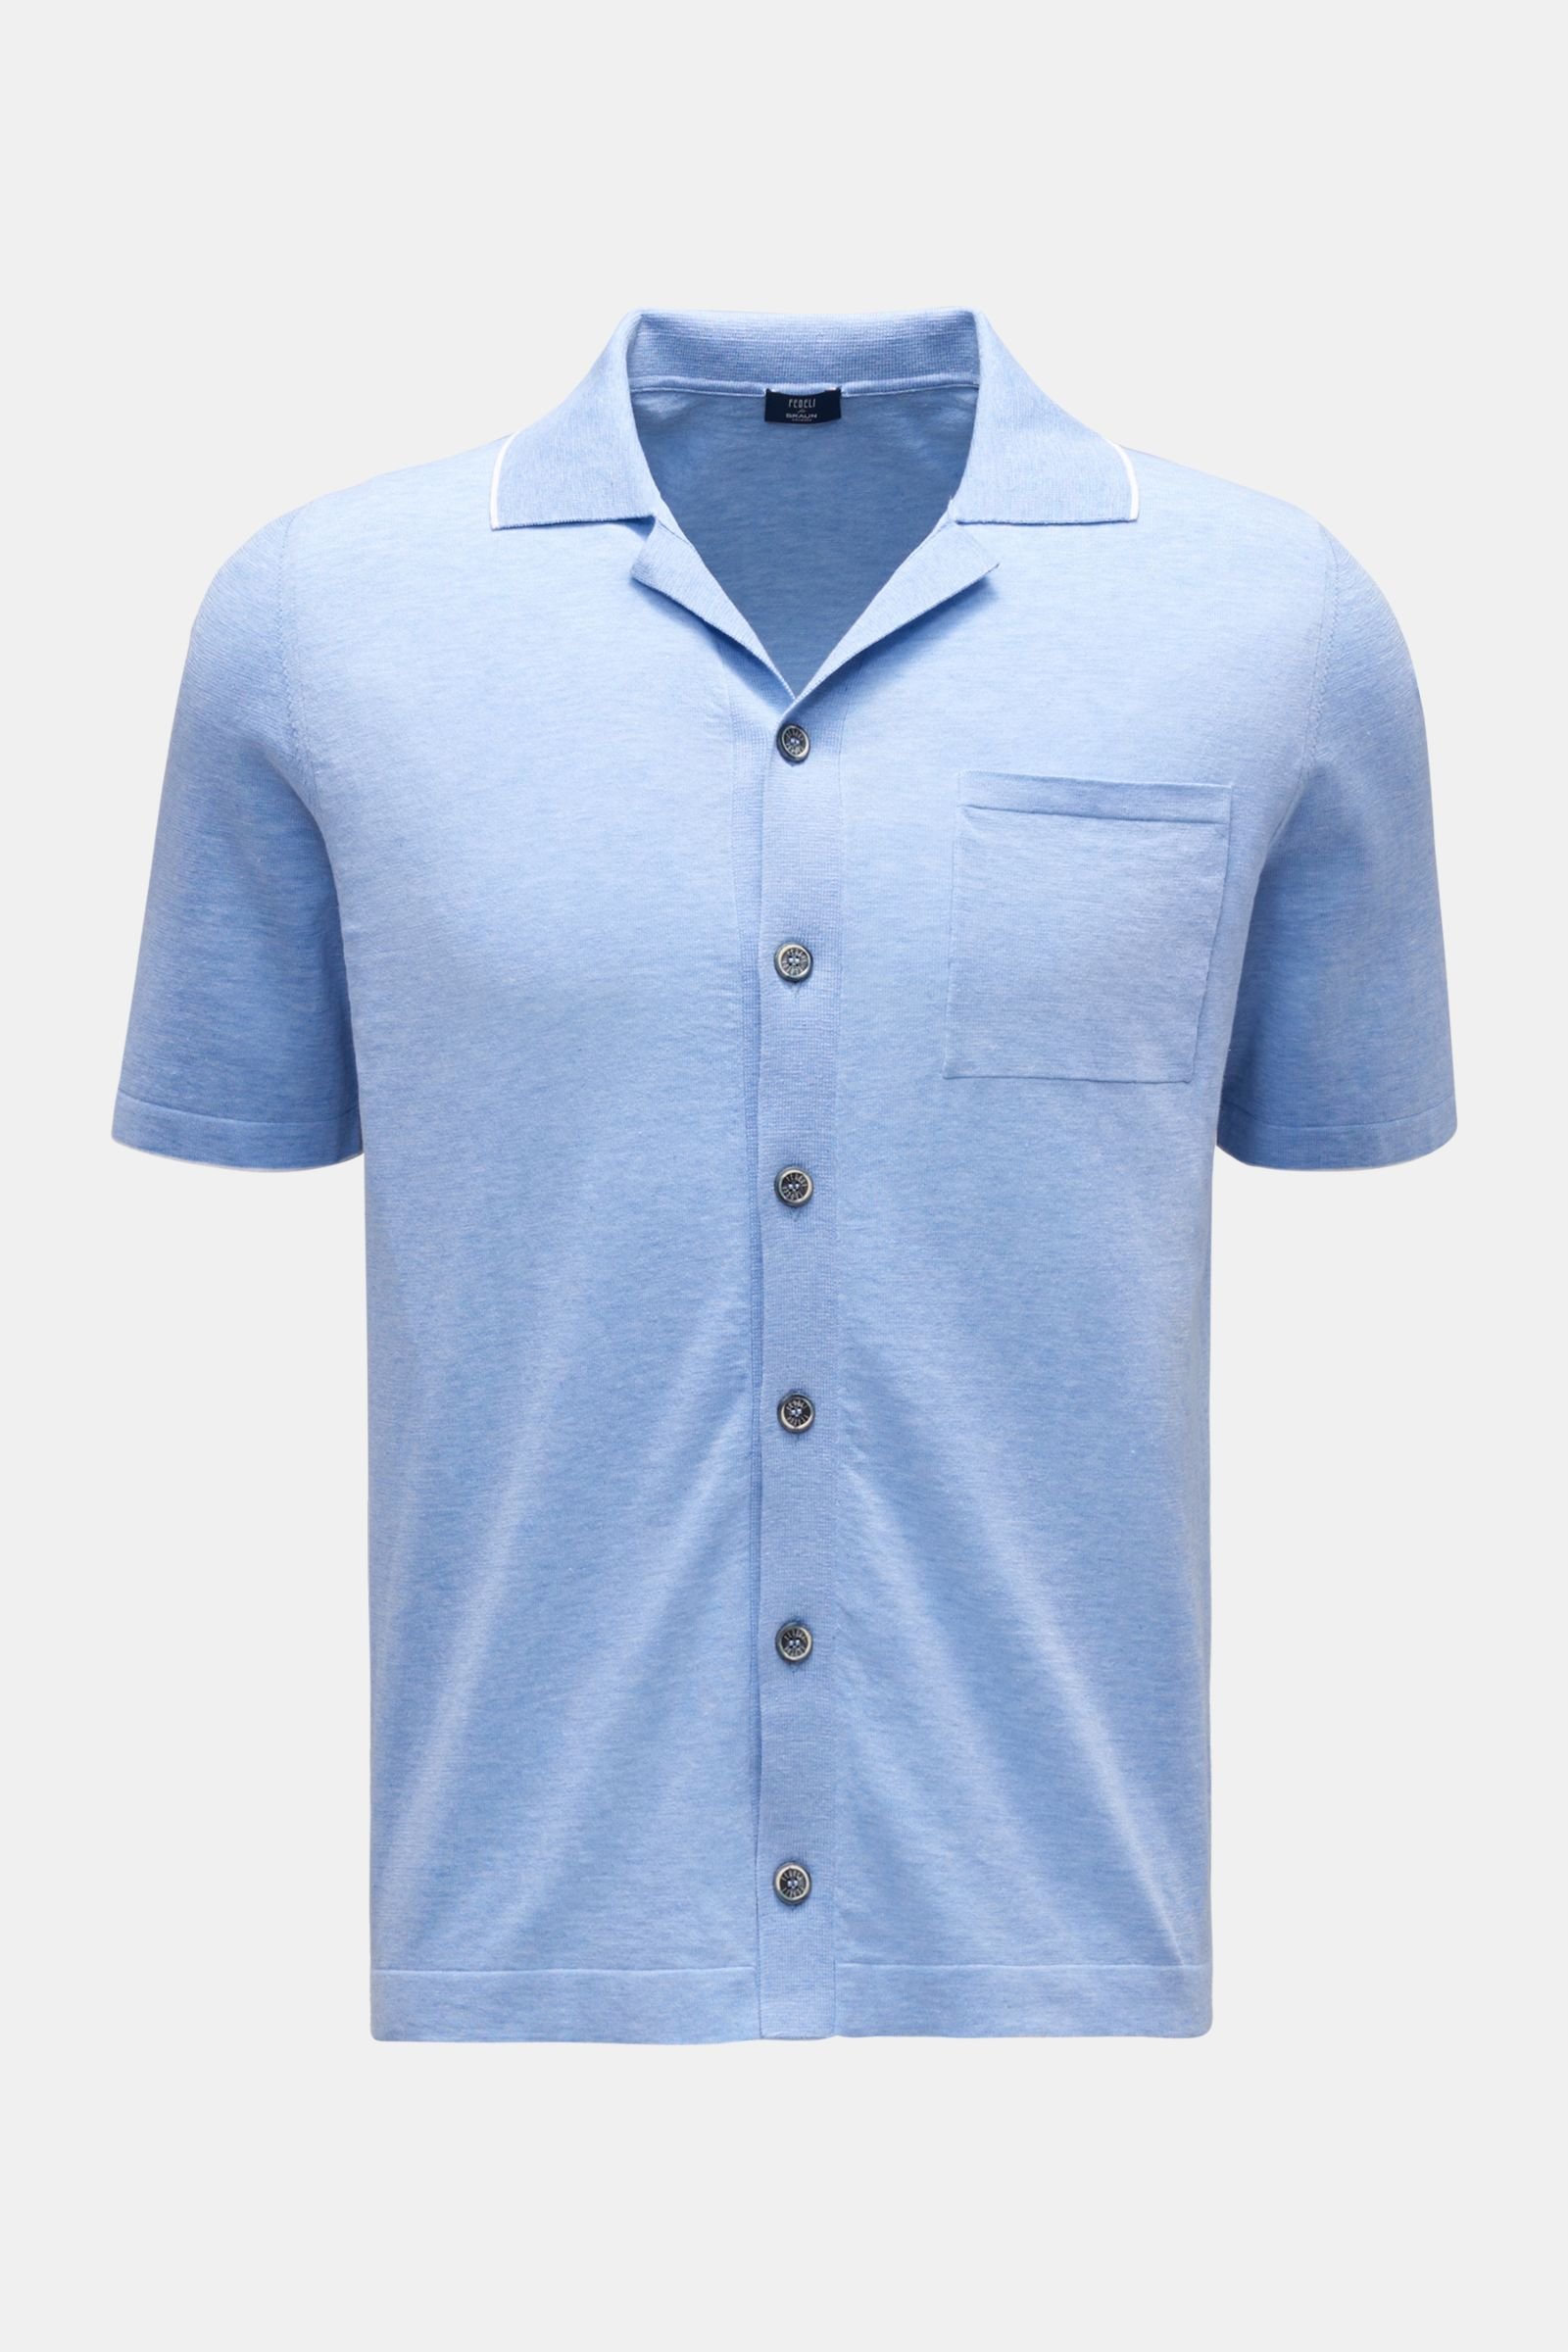 Short sleeve knit shirt 'Jazz' Cuban collar light blue